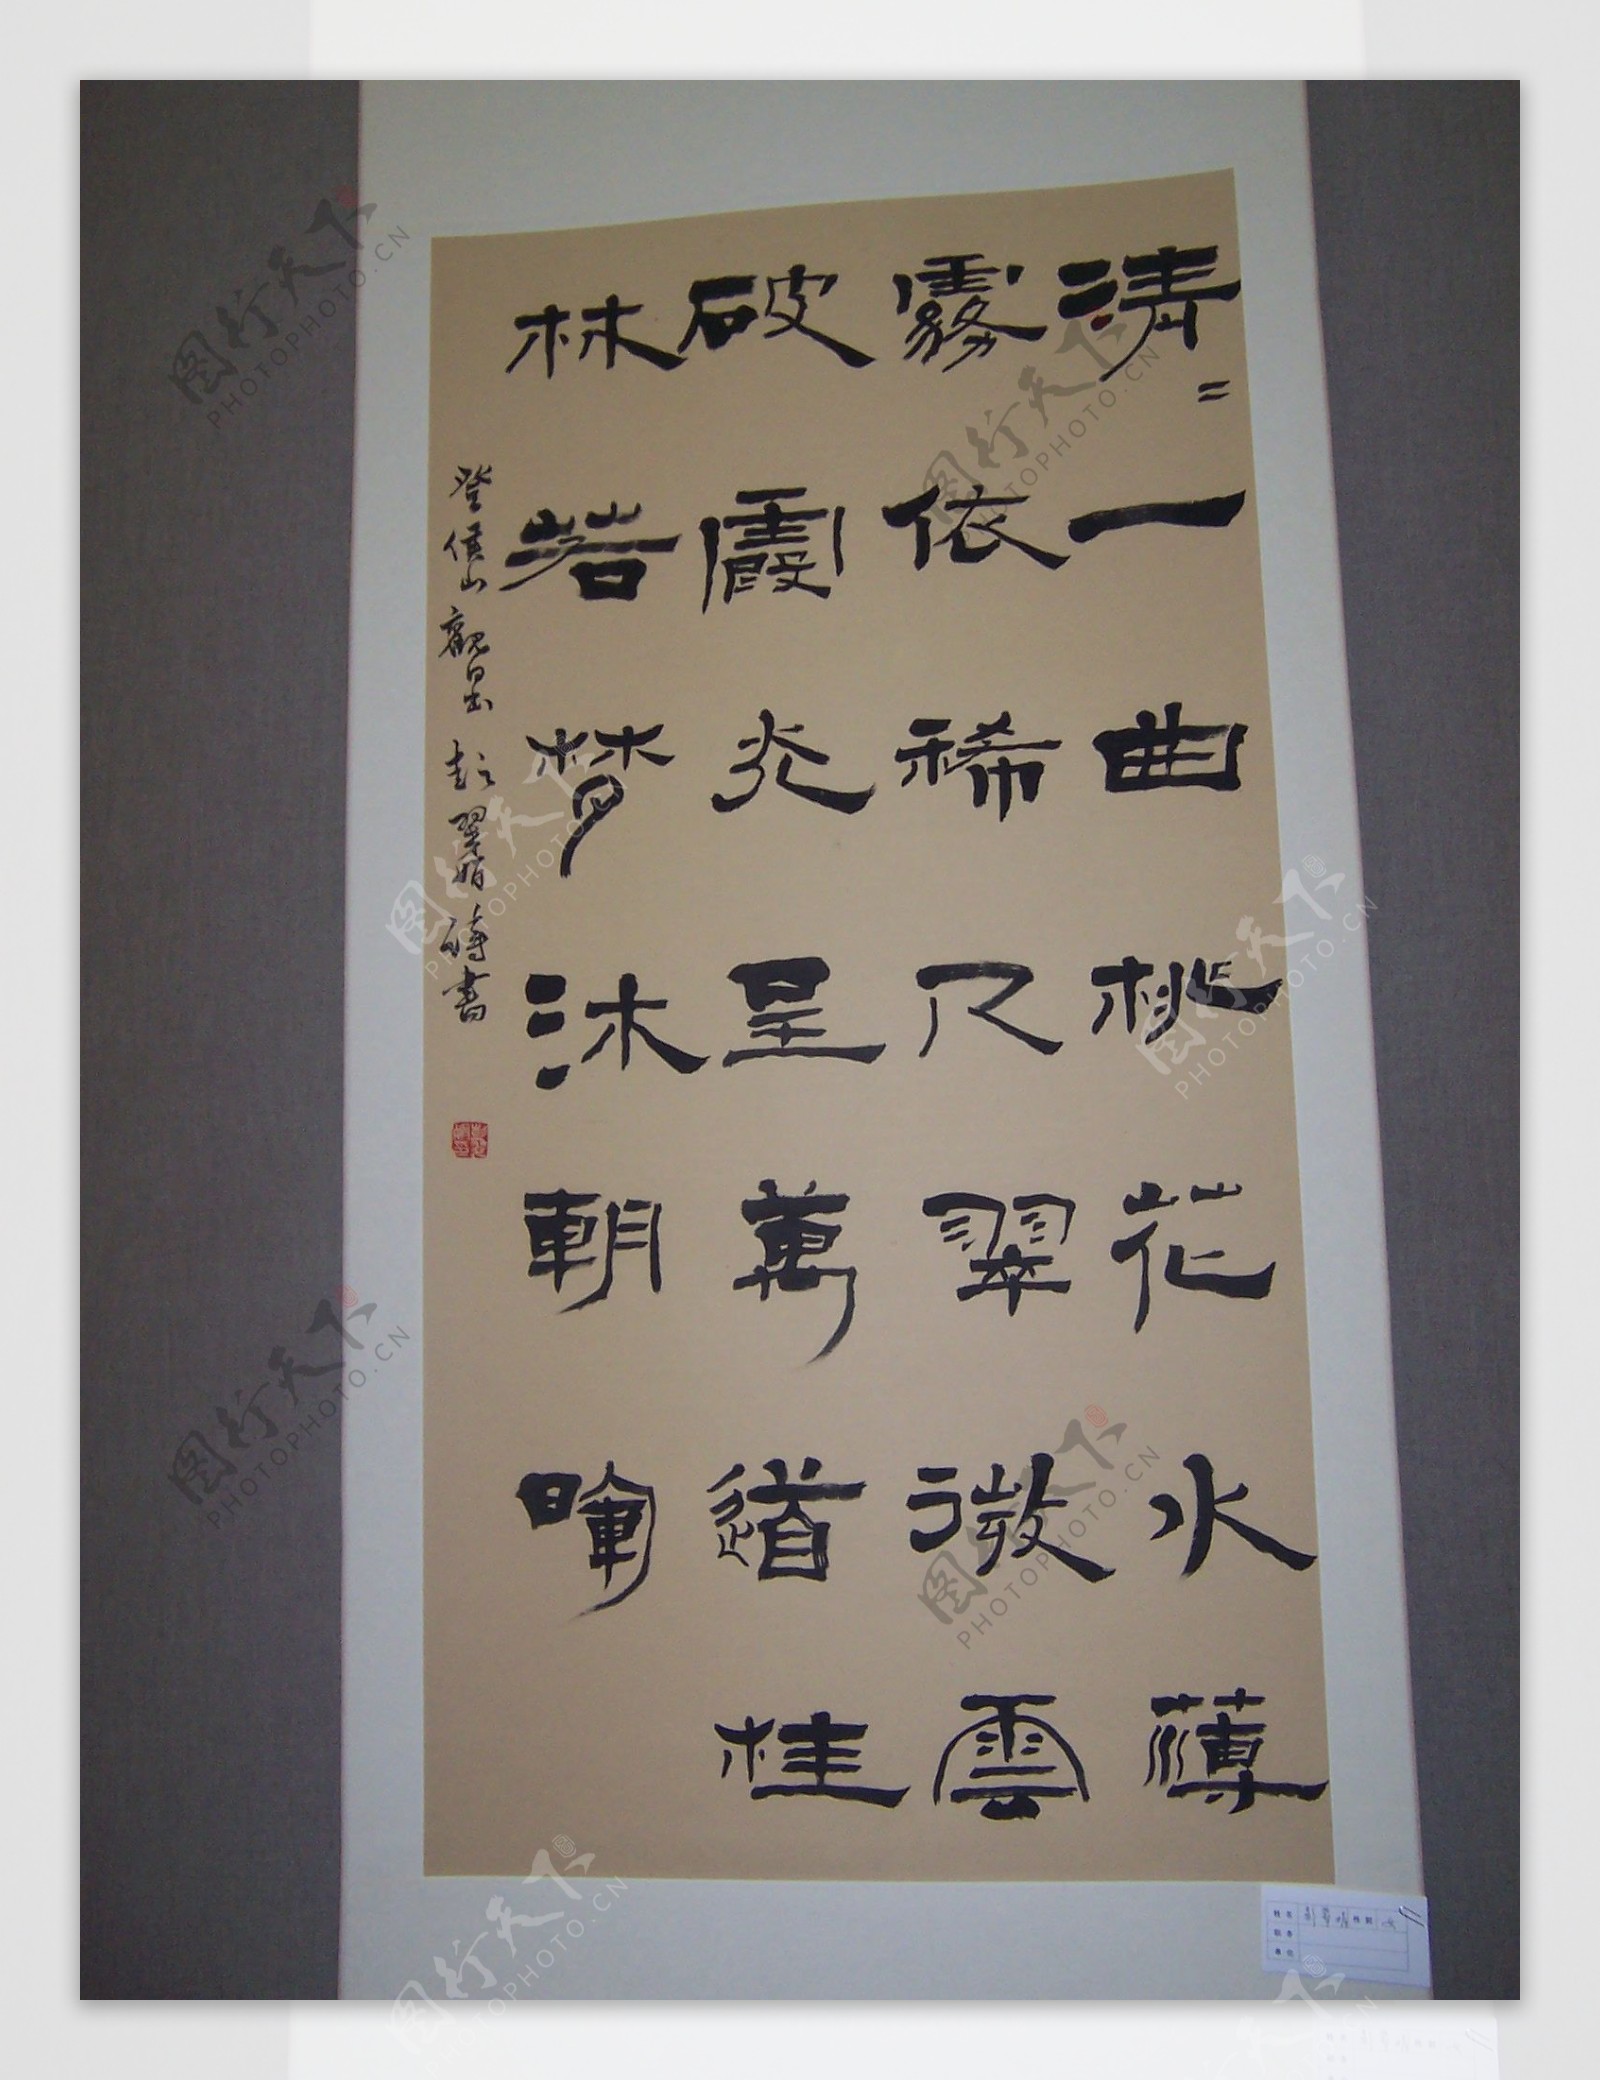 桂林市自作诗书法毛笔展览图片